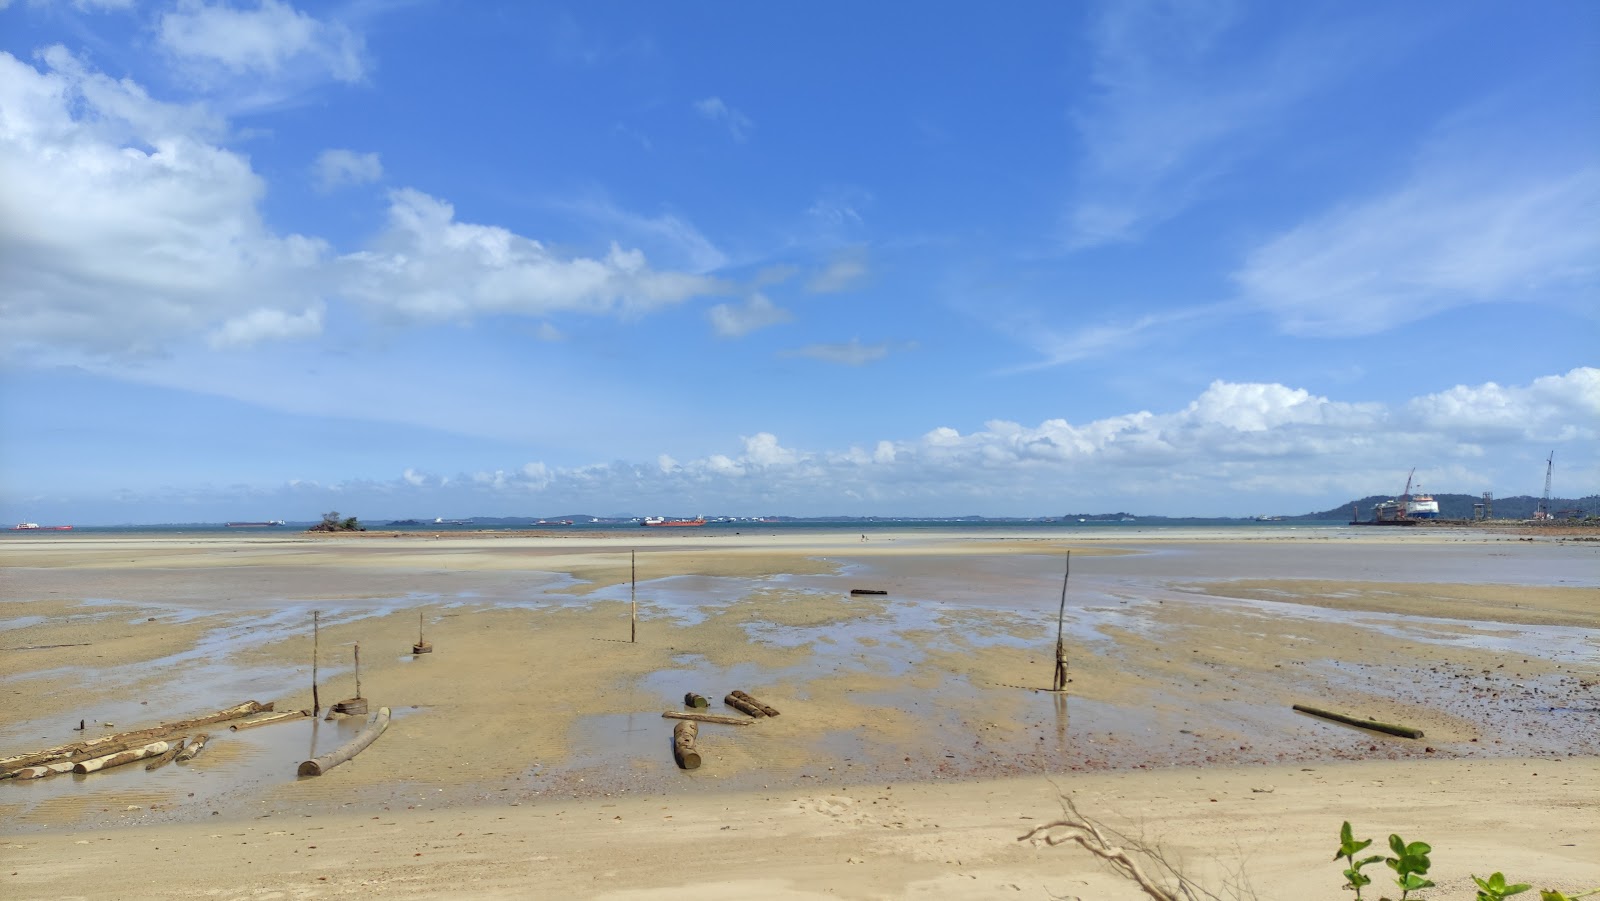 Pantai Panau'in fotoğrafı imkanlar alanı